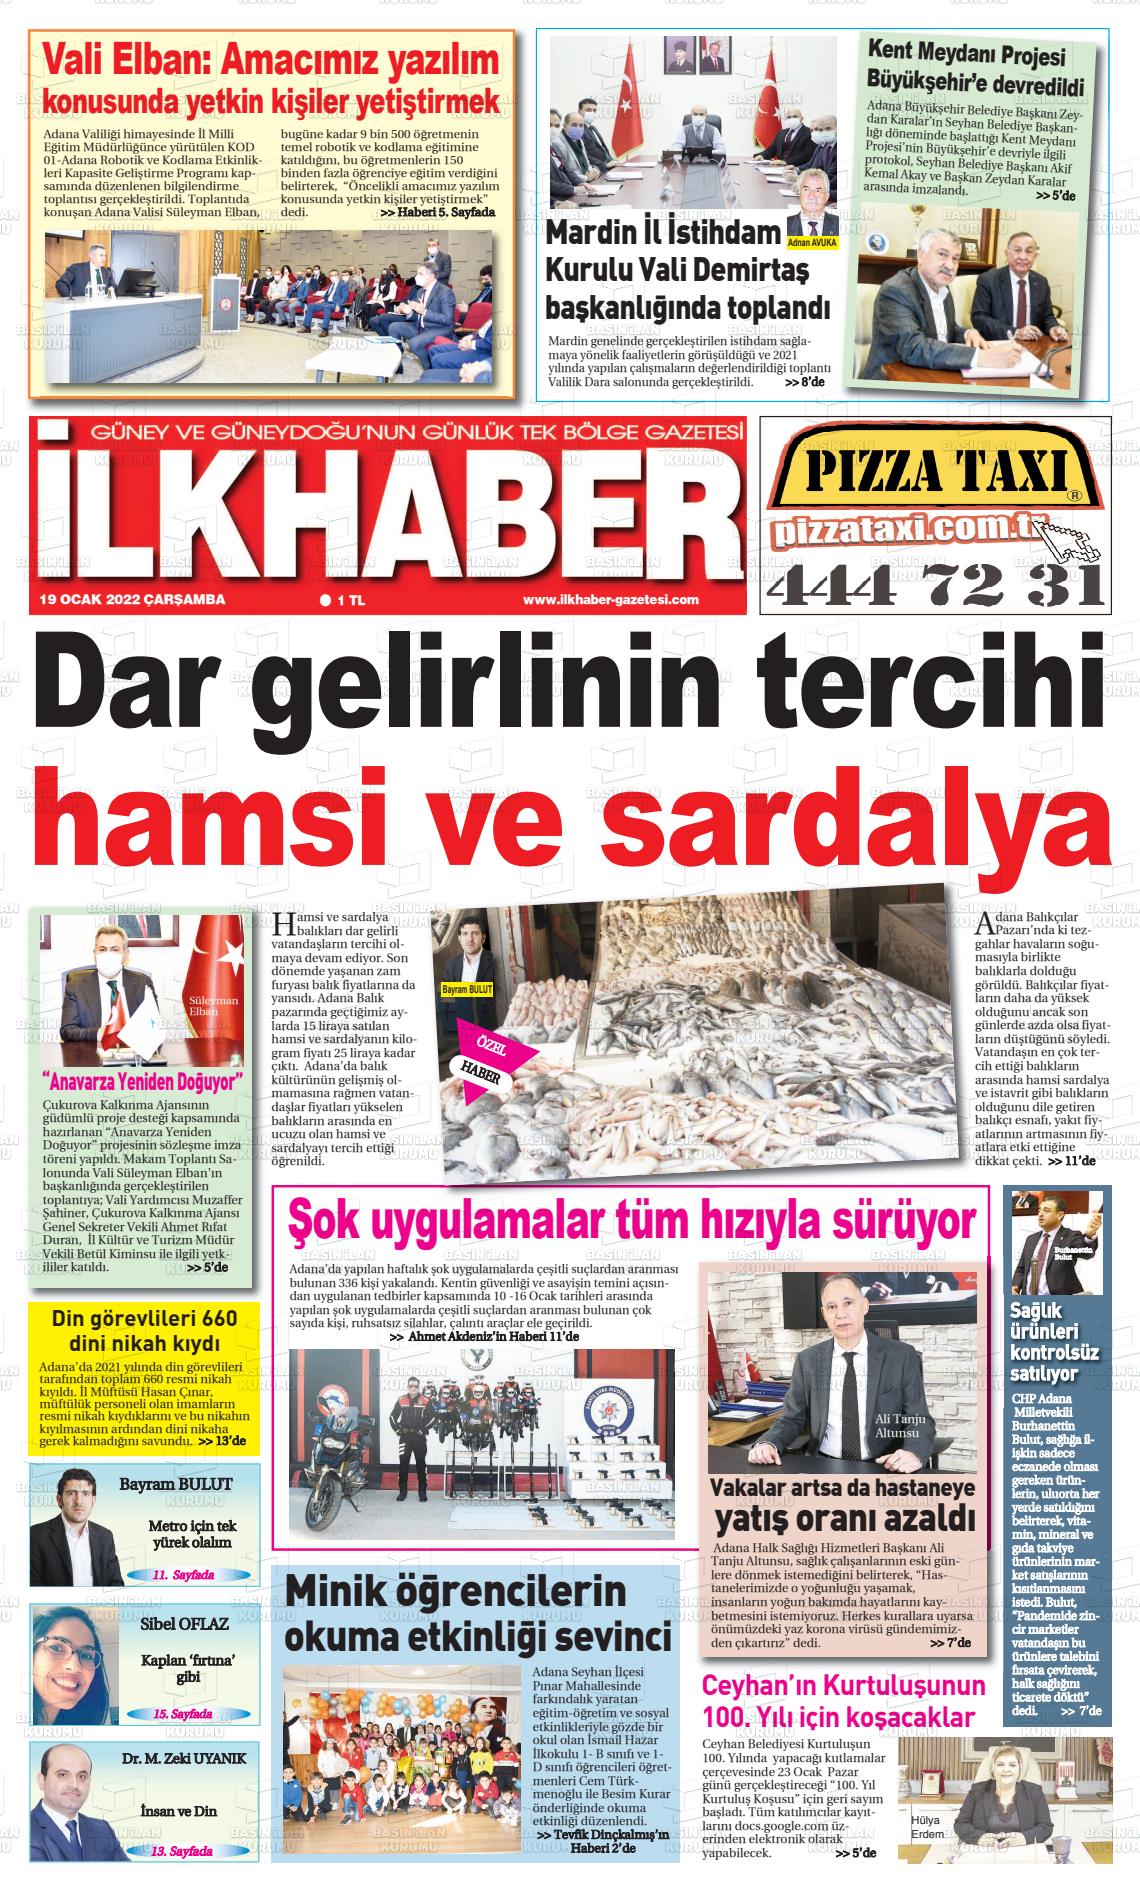 19 Ocak 2022 İlk Haber Gazete Manşeti